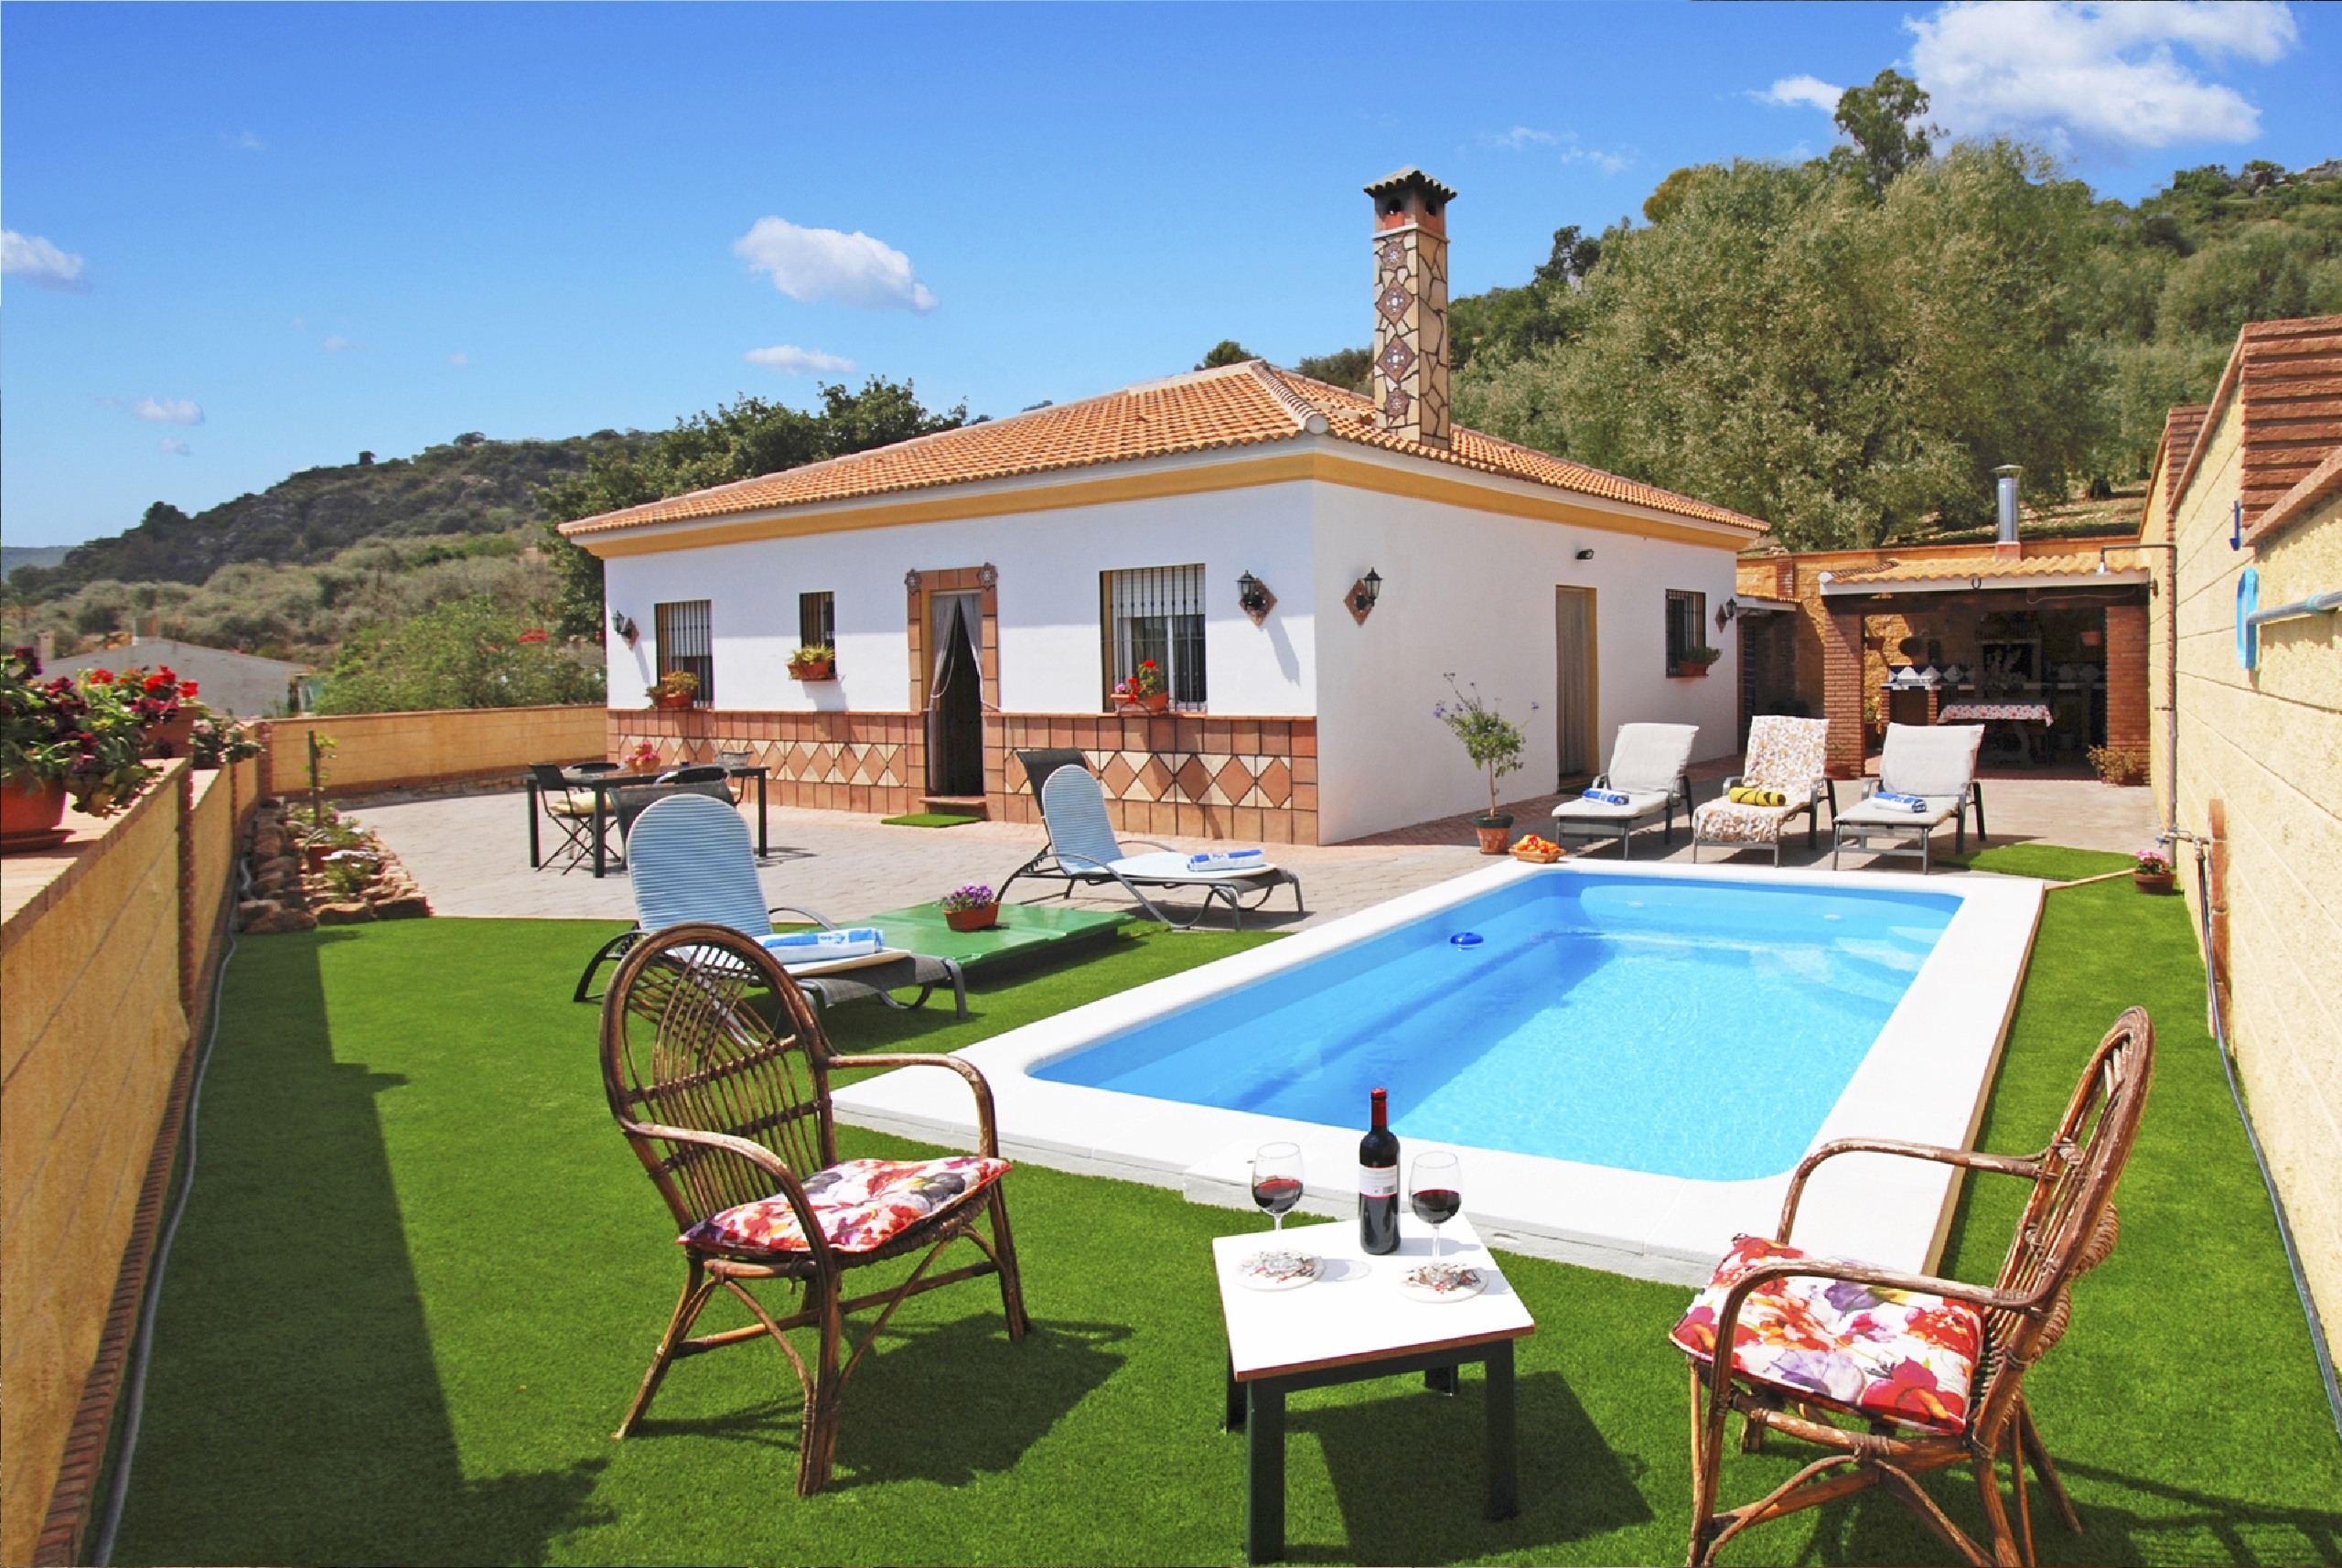 Maison de vacances avec piscine privée près du village andalou de Comares, Malaga